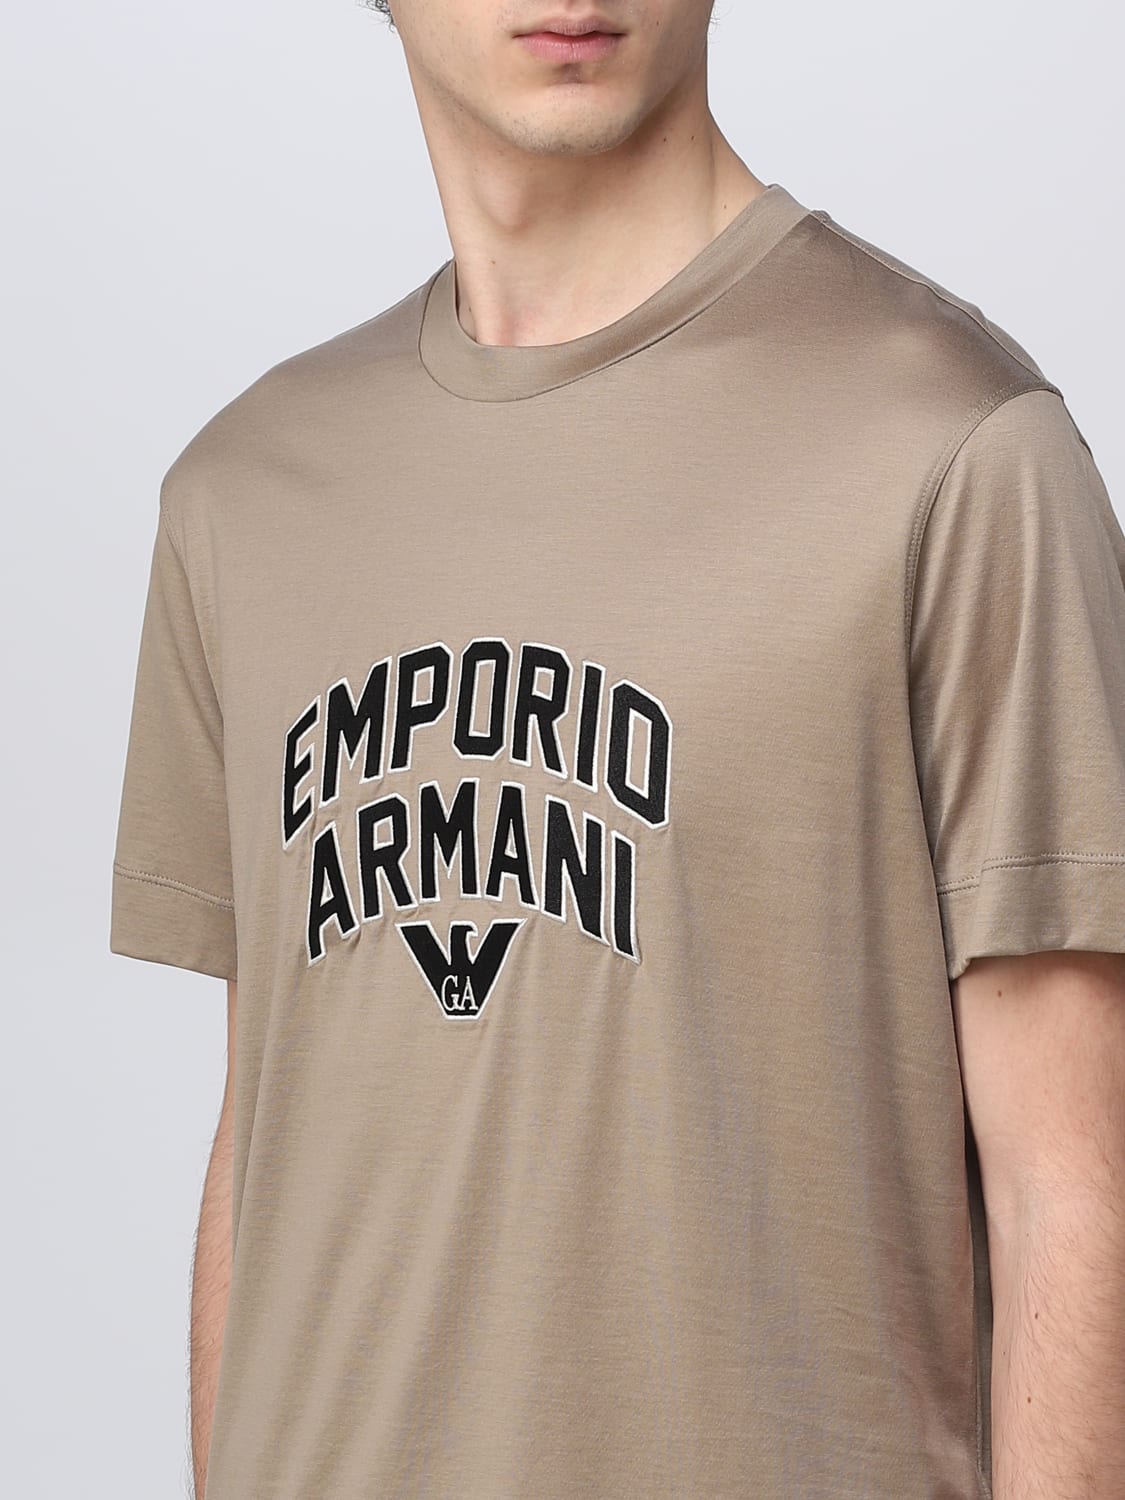 EMPORIO ARMANI エンポリオアルマーニ Tシャツ ベージュ